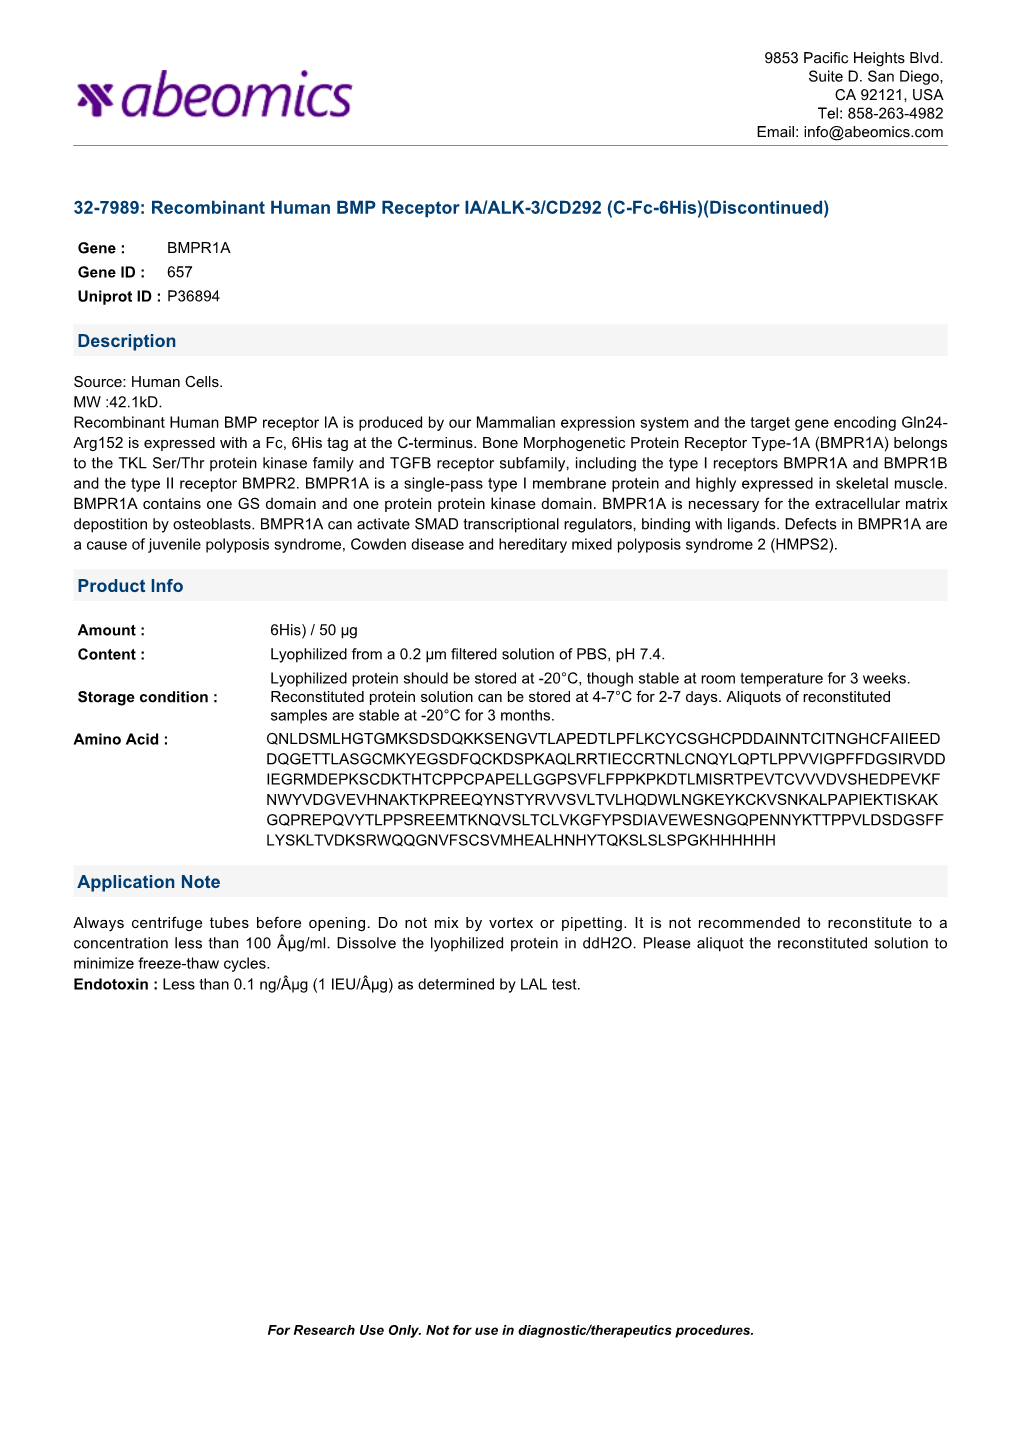 32-7989: Recombinant Human BMP Receptor IA/ALK-3/CD292 (C-Fc-6His)(Discontinued)